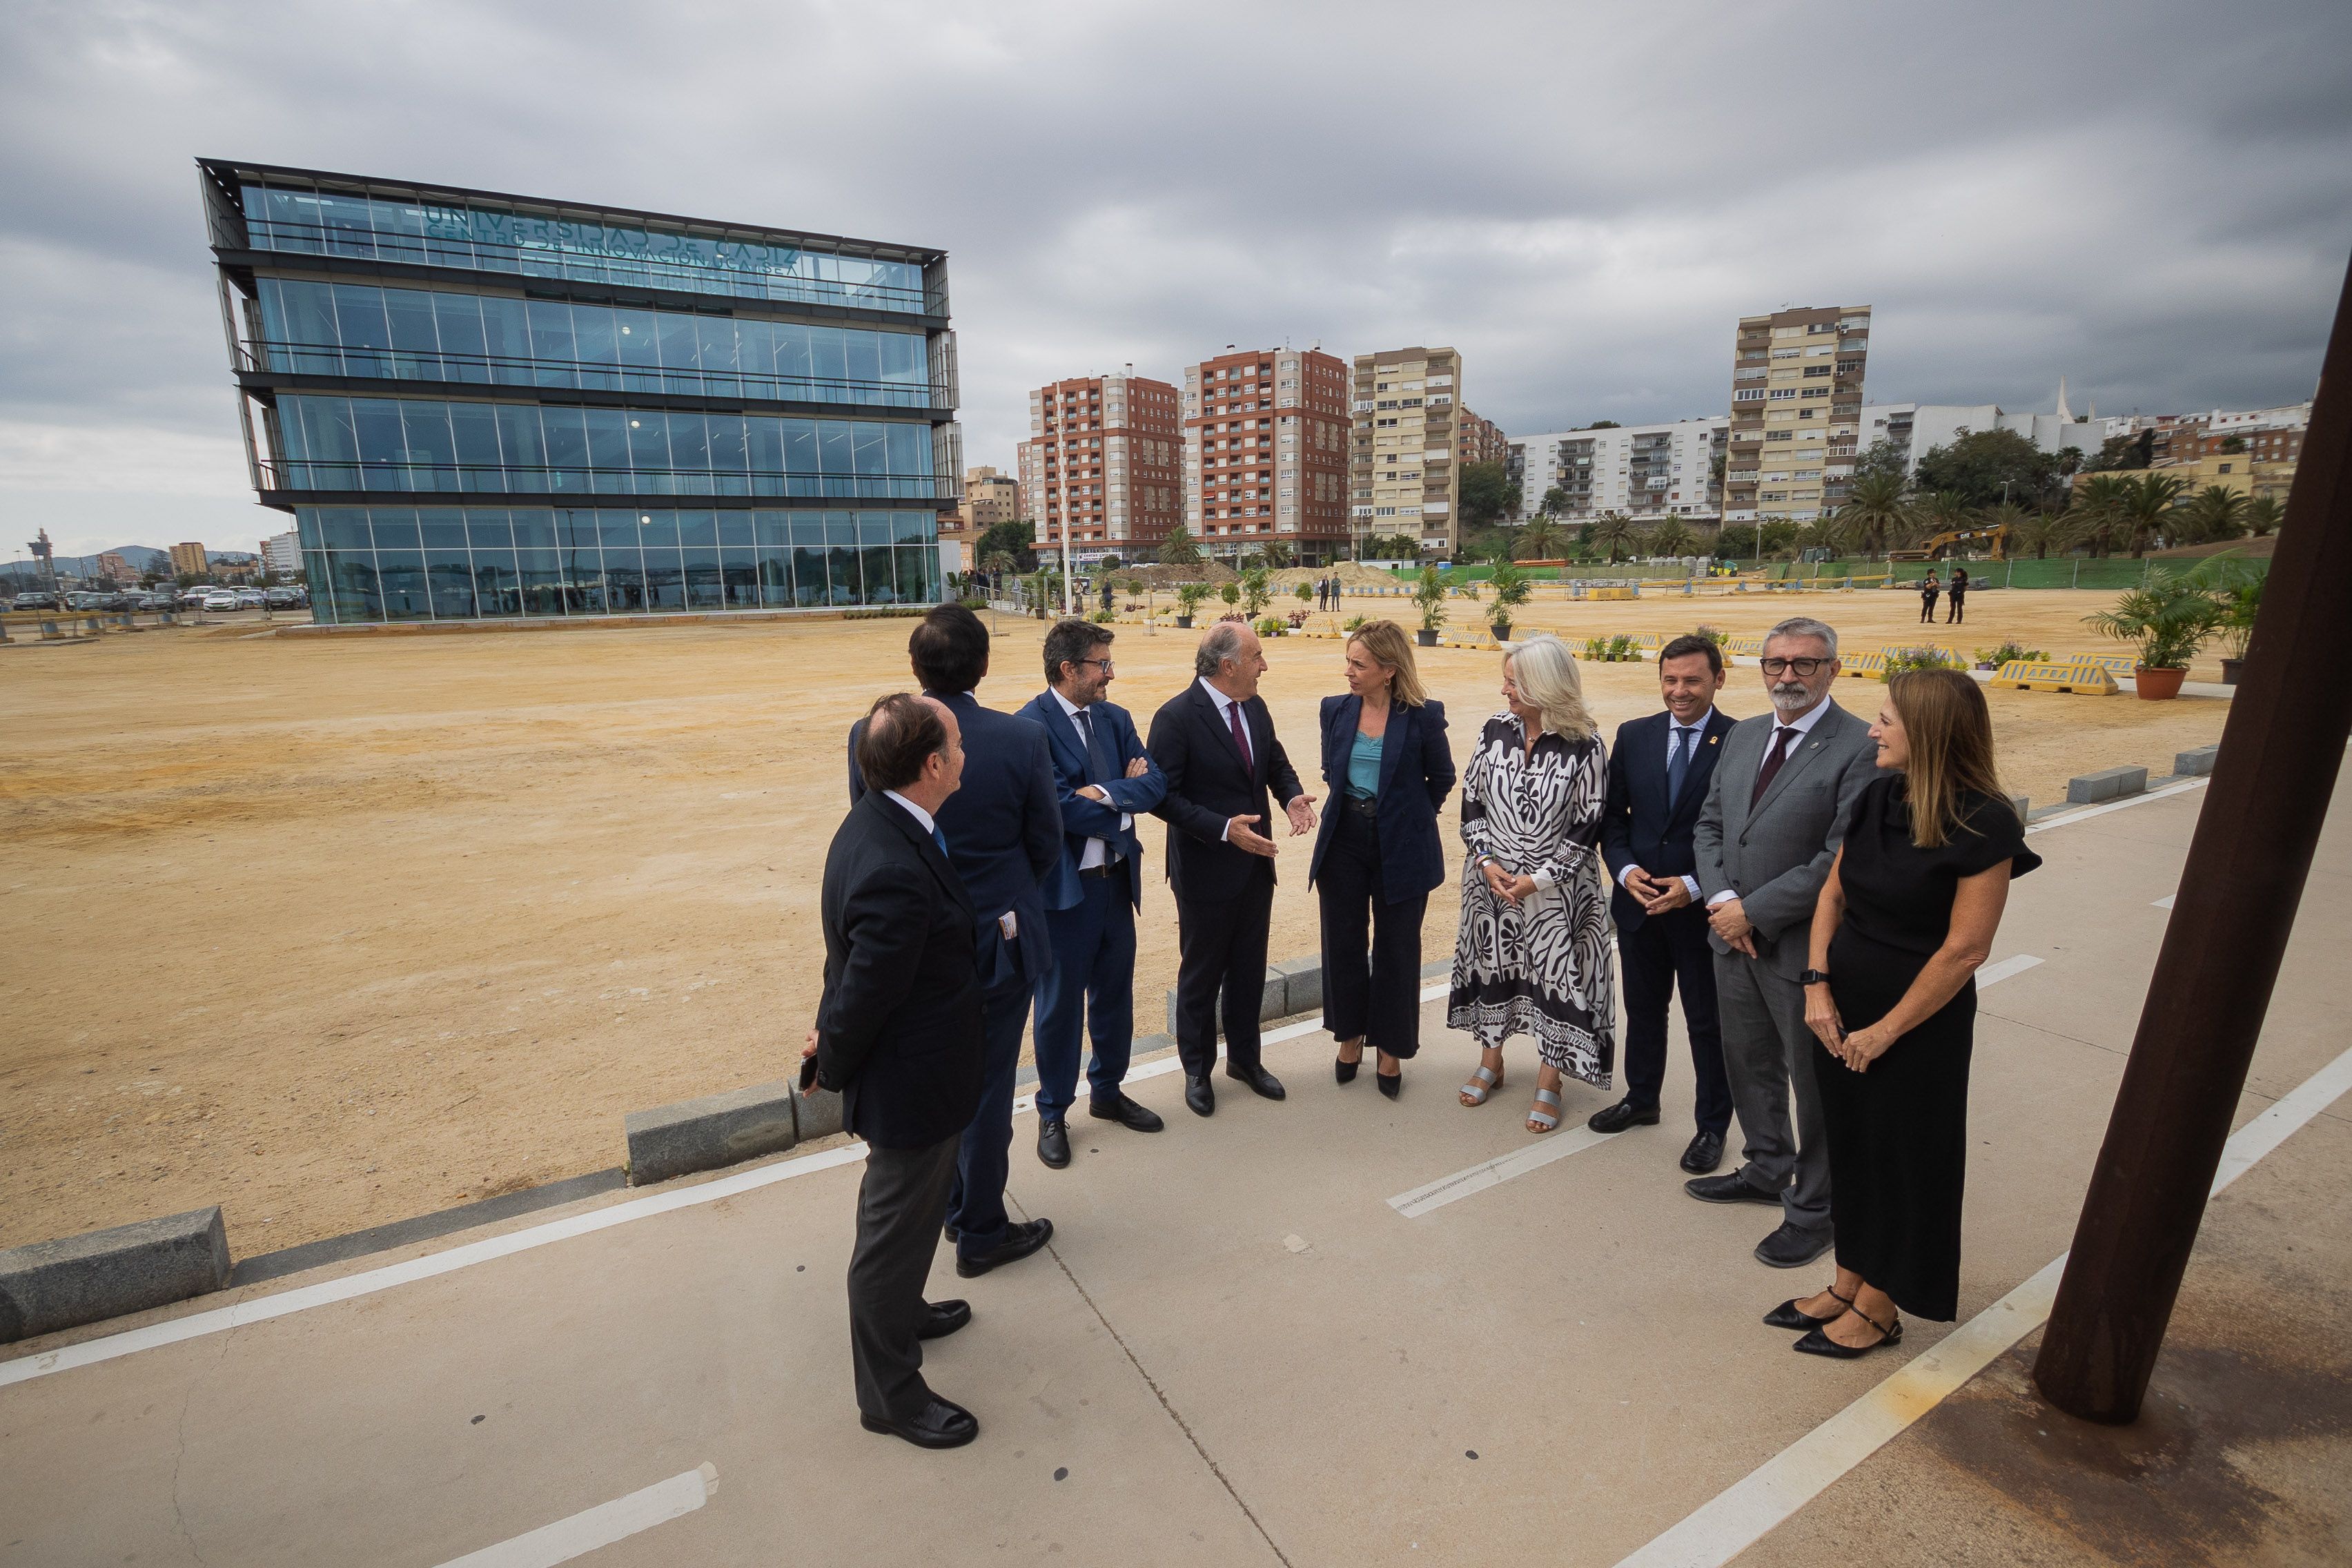 Autoridades locales y provinciales en la inauguración de un centro de investigación en el puerto de Algeciras.